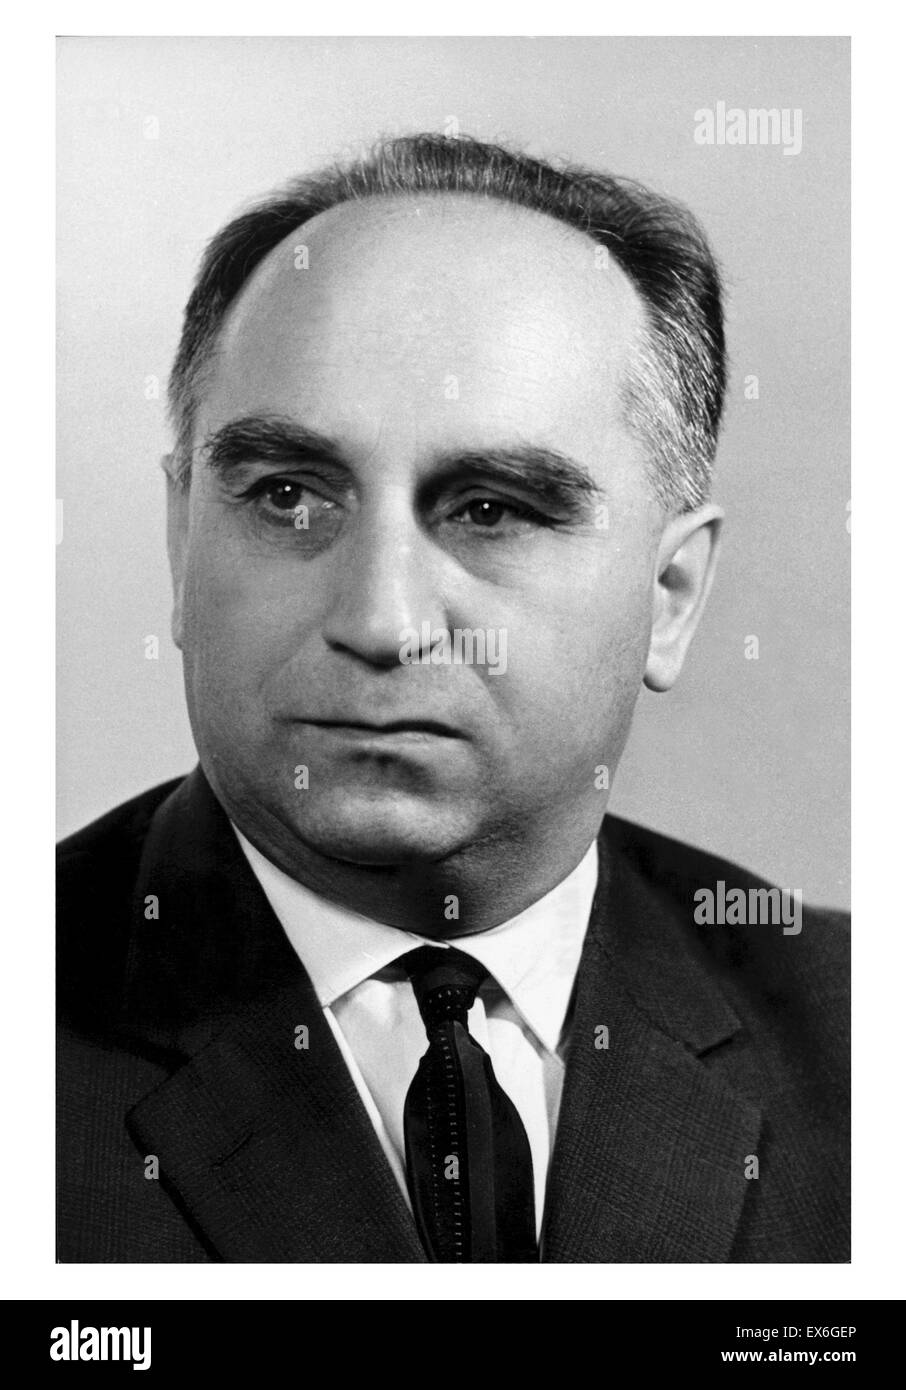 Stefan J? Drychowski (9. Mai 1910 - 1996) [1] war ein polnischer Journalist und kommunistischer Politiker, stellvertretender Ministerpräsident, Minister für auswärtige Angelegenheiten und Finanzminister in Polen Stockfoto